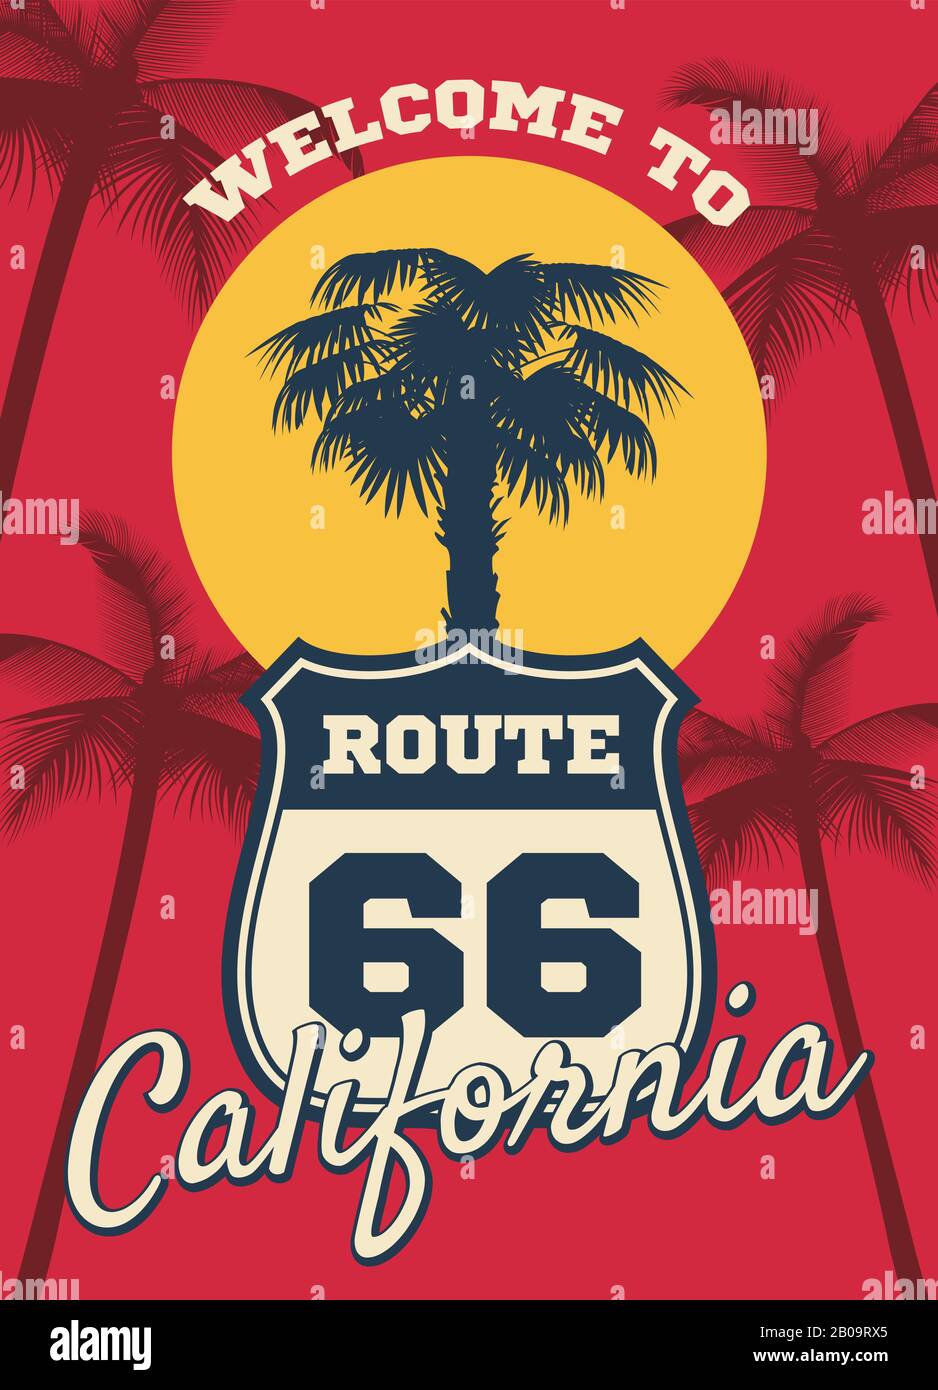 Playa de California mar tema vector sueño fondo, diseño postal. Silueta de la palma del árbol en california, ilustración de la ruta de la señal 66 para viajar california Ilustración del Vector